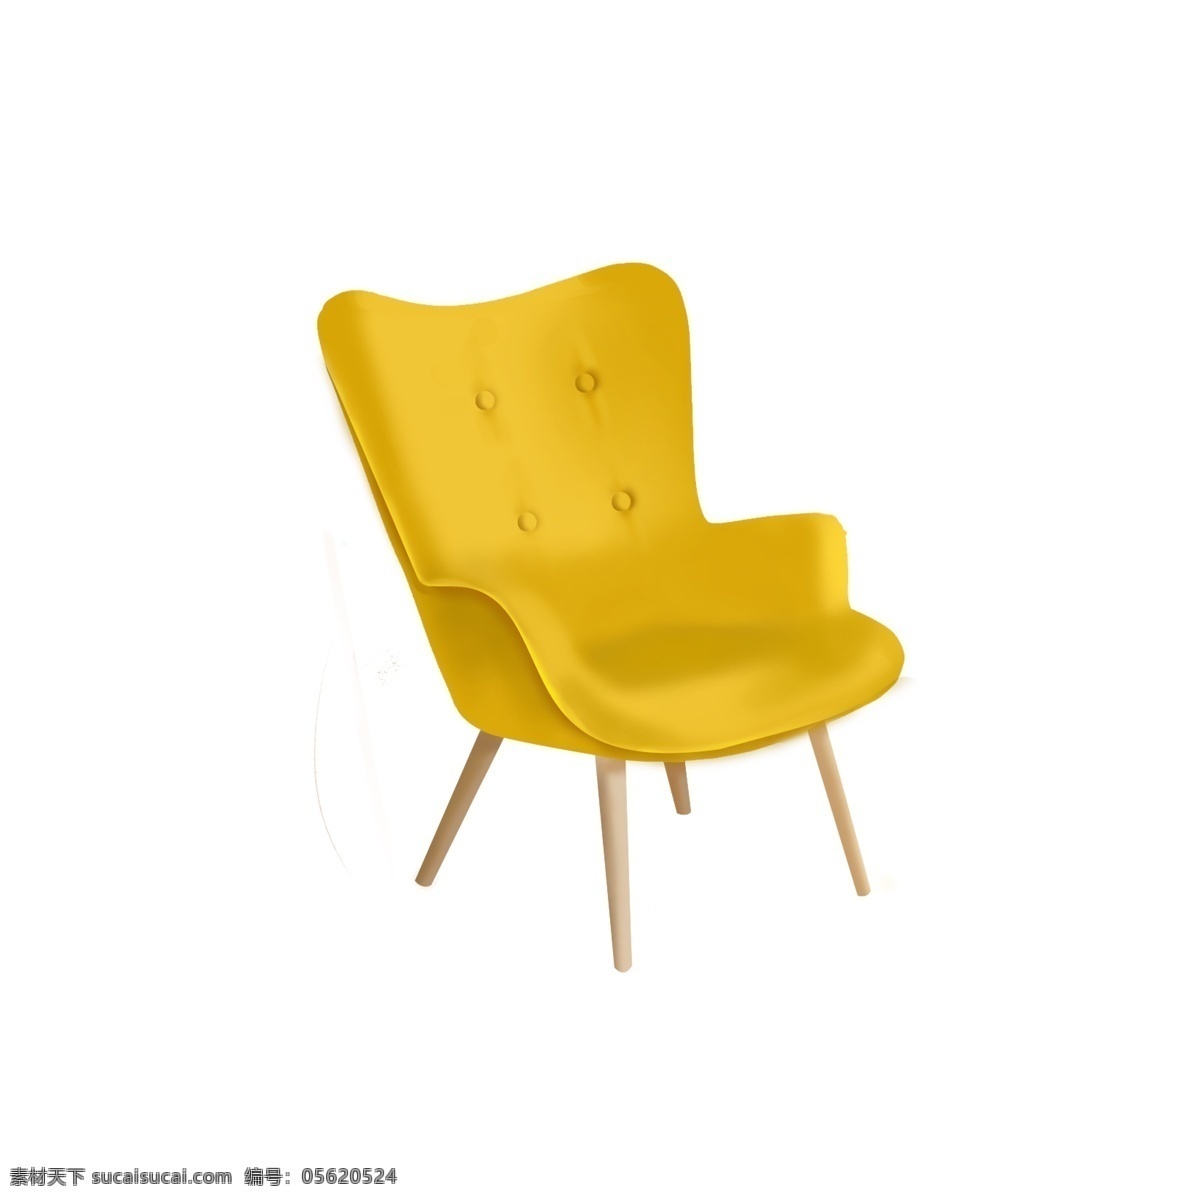 手绘 家具 沙发椅 黄色 客厅 沙发 彩色 家居 椅子 设计元素 黄色椅子